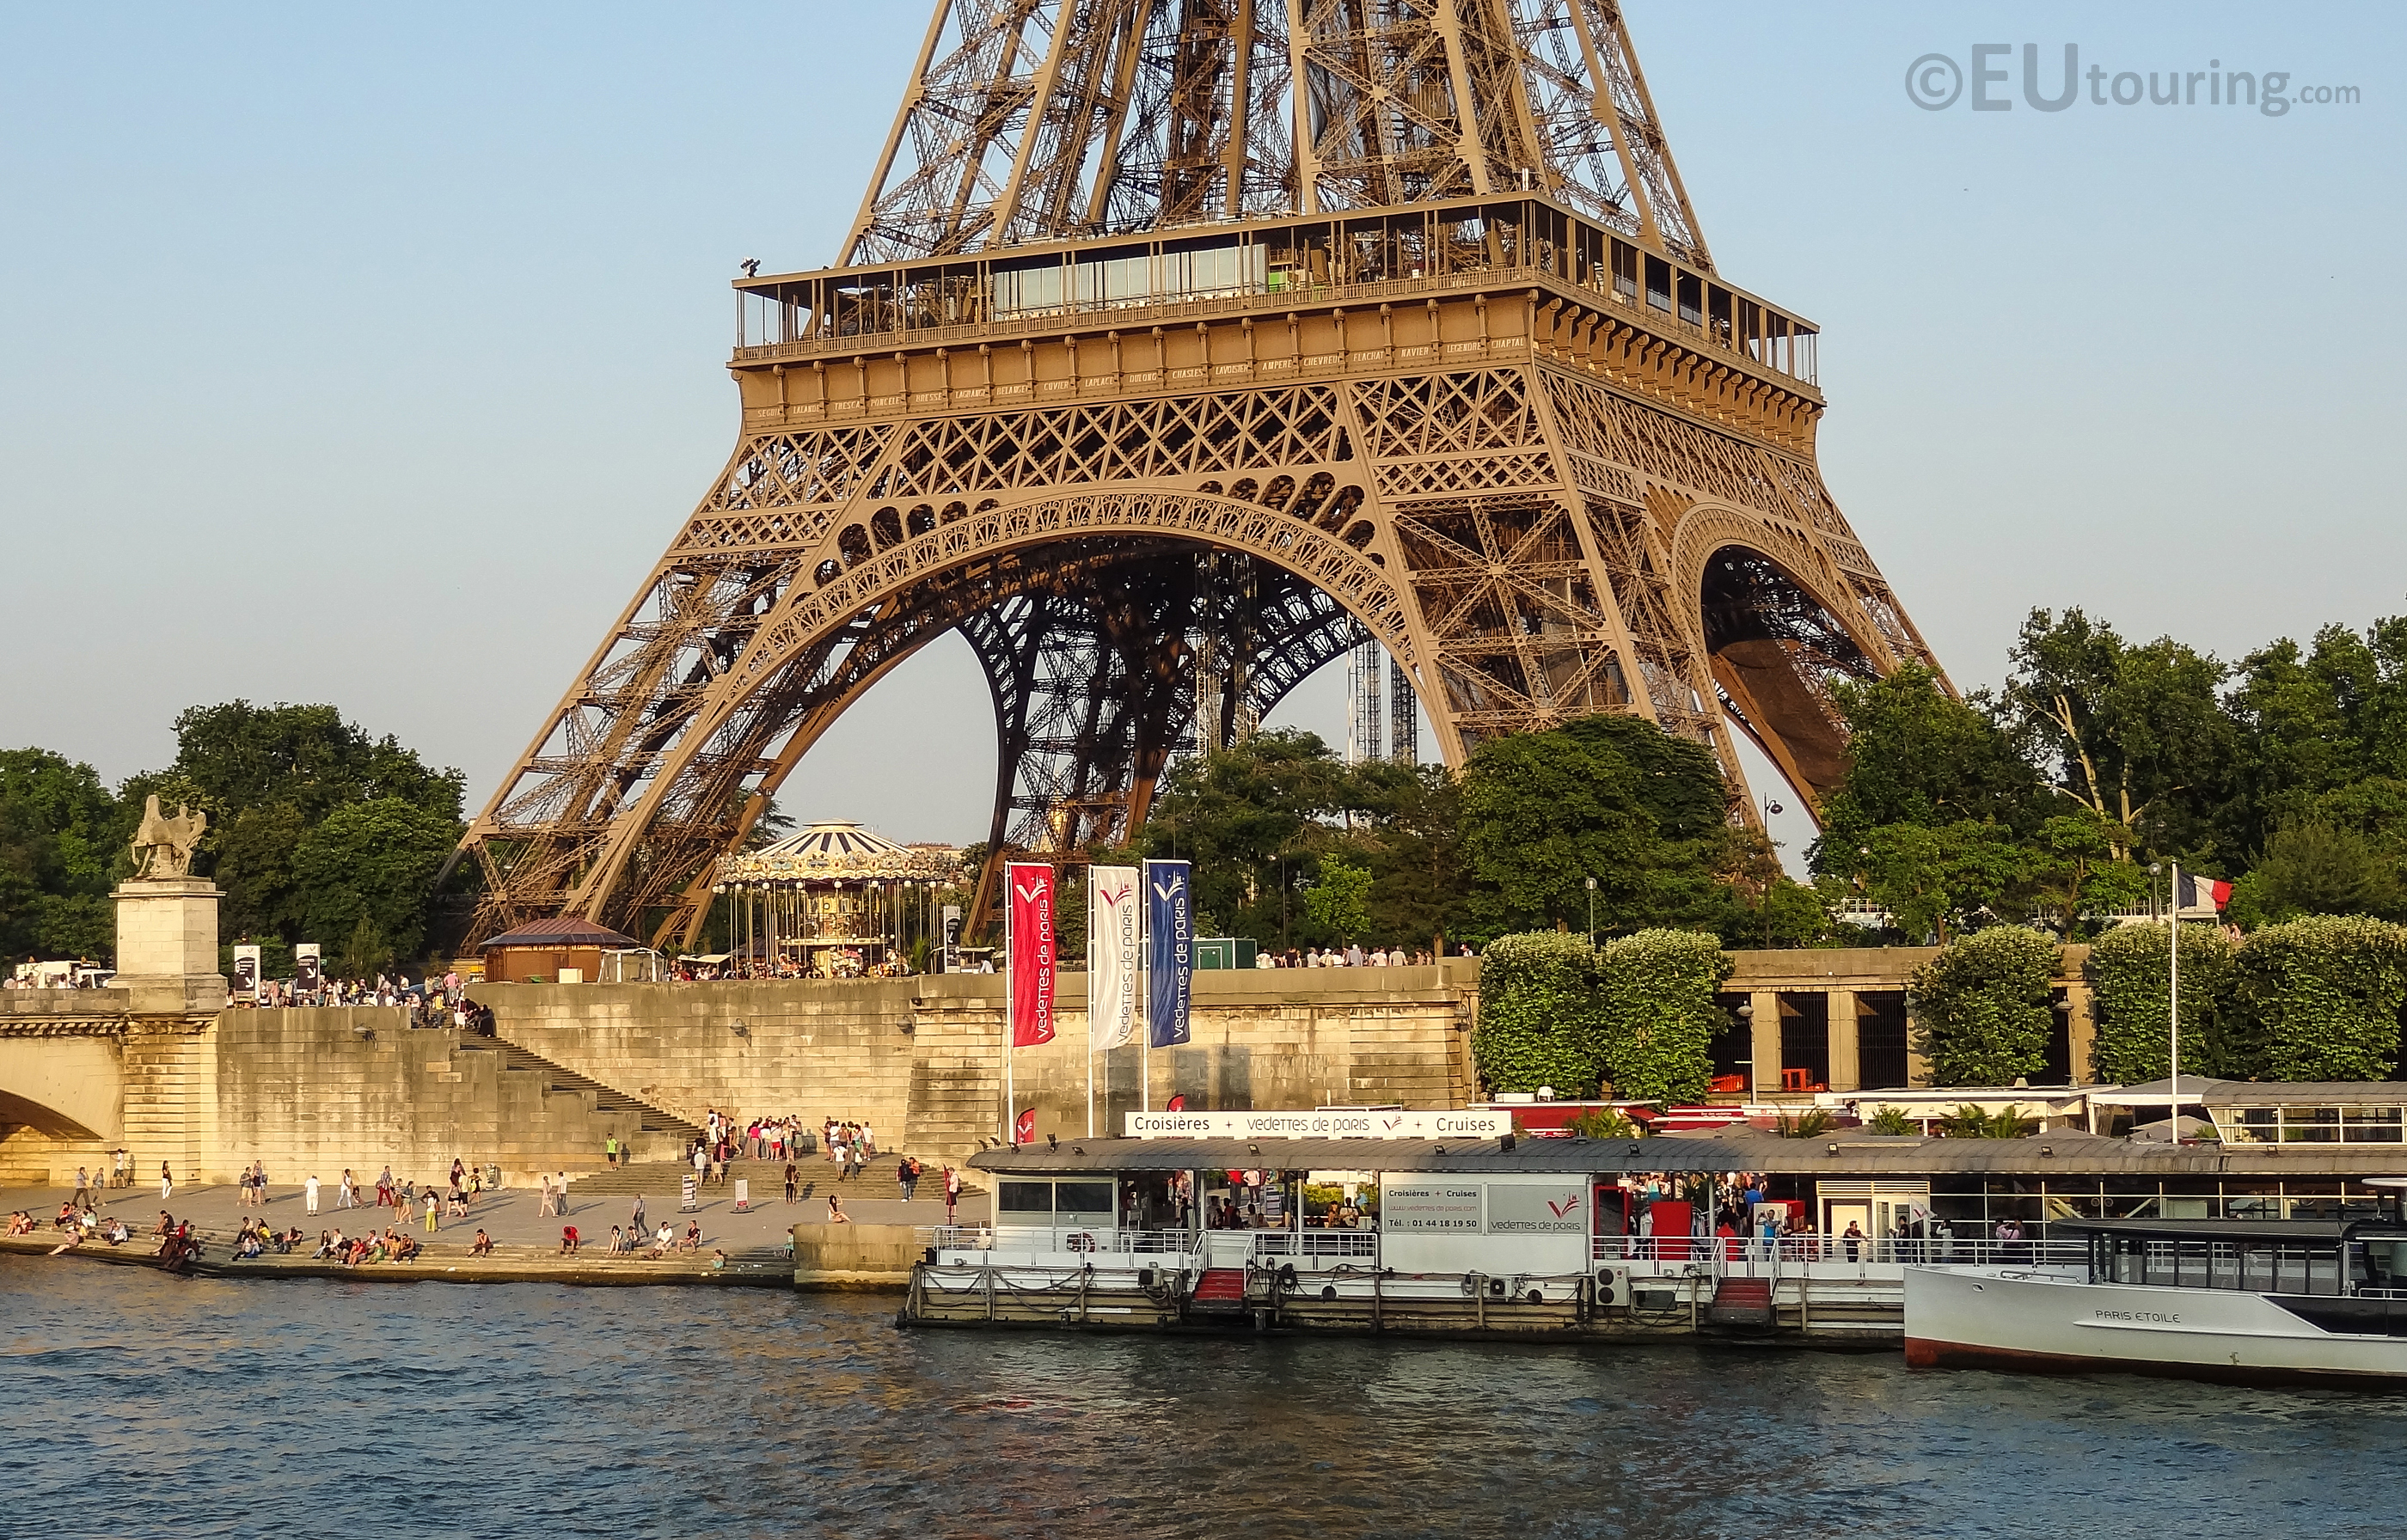 Docks outside the Eiffel Tower
